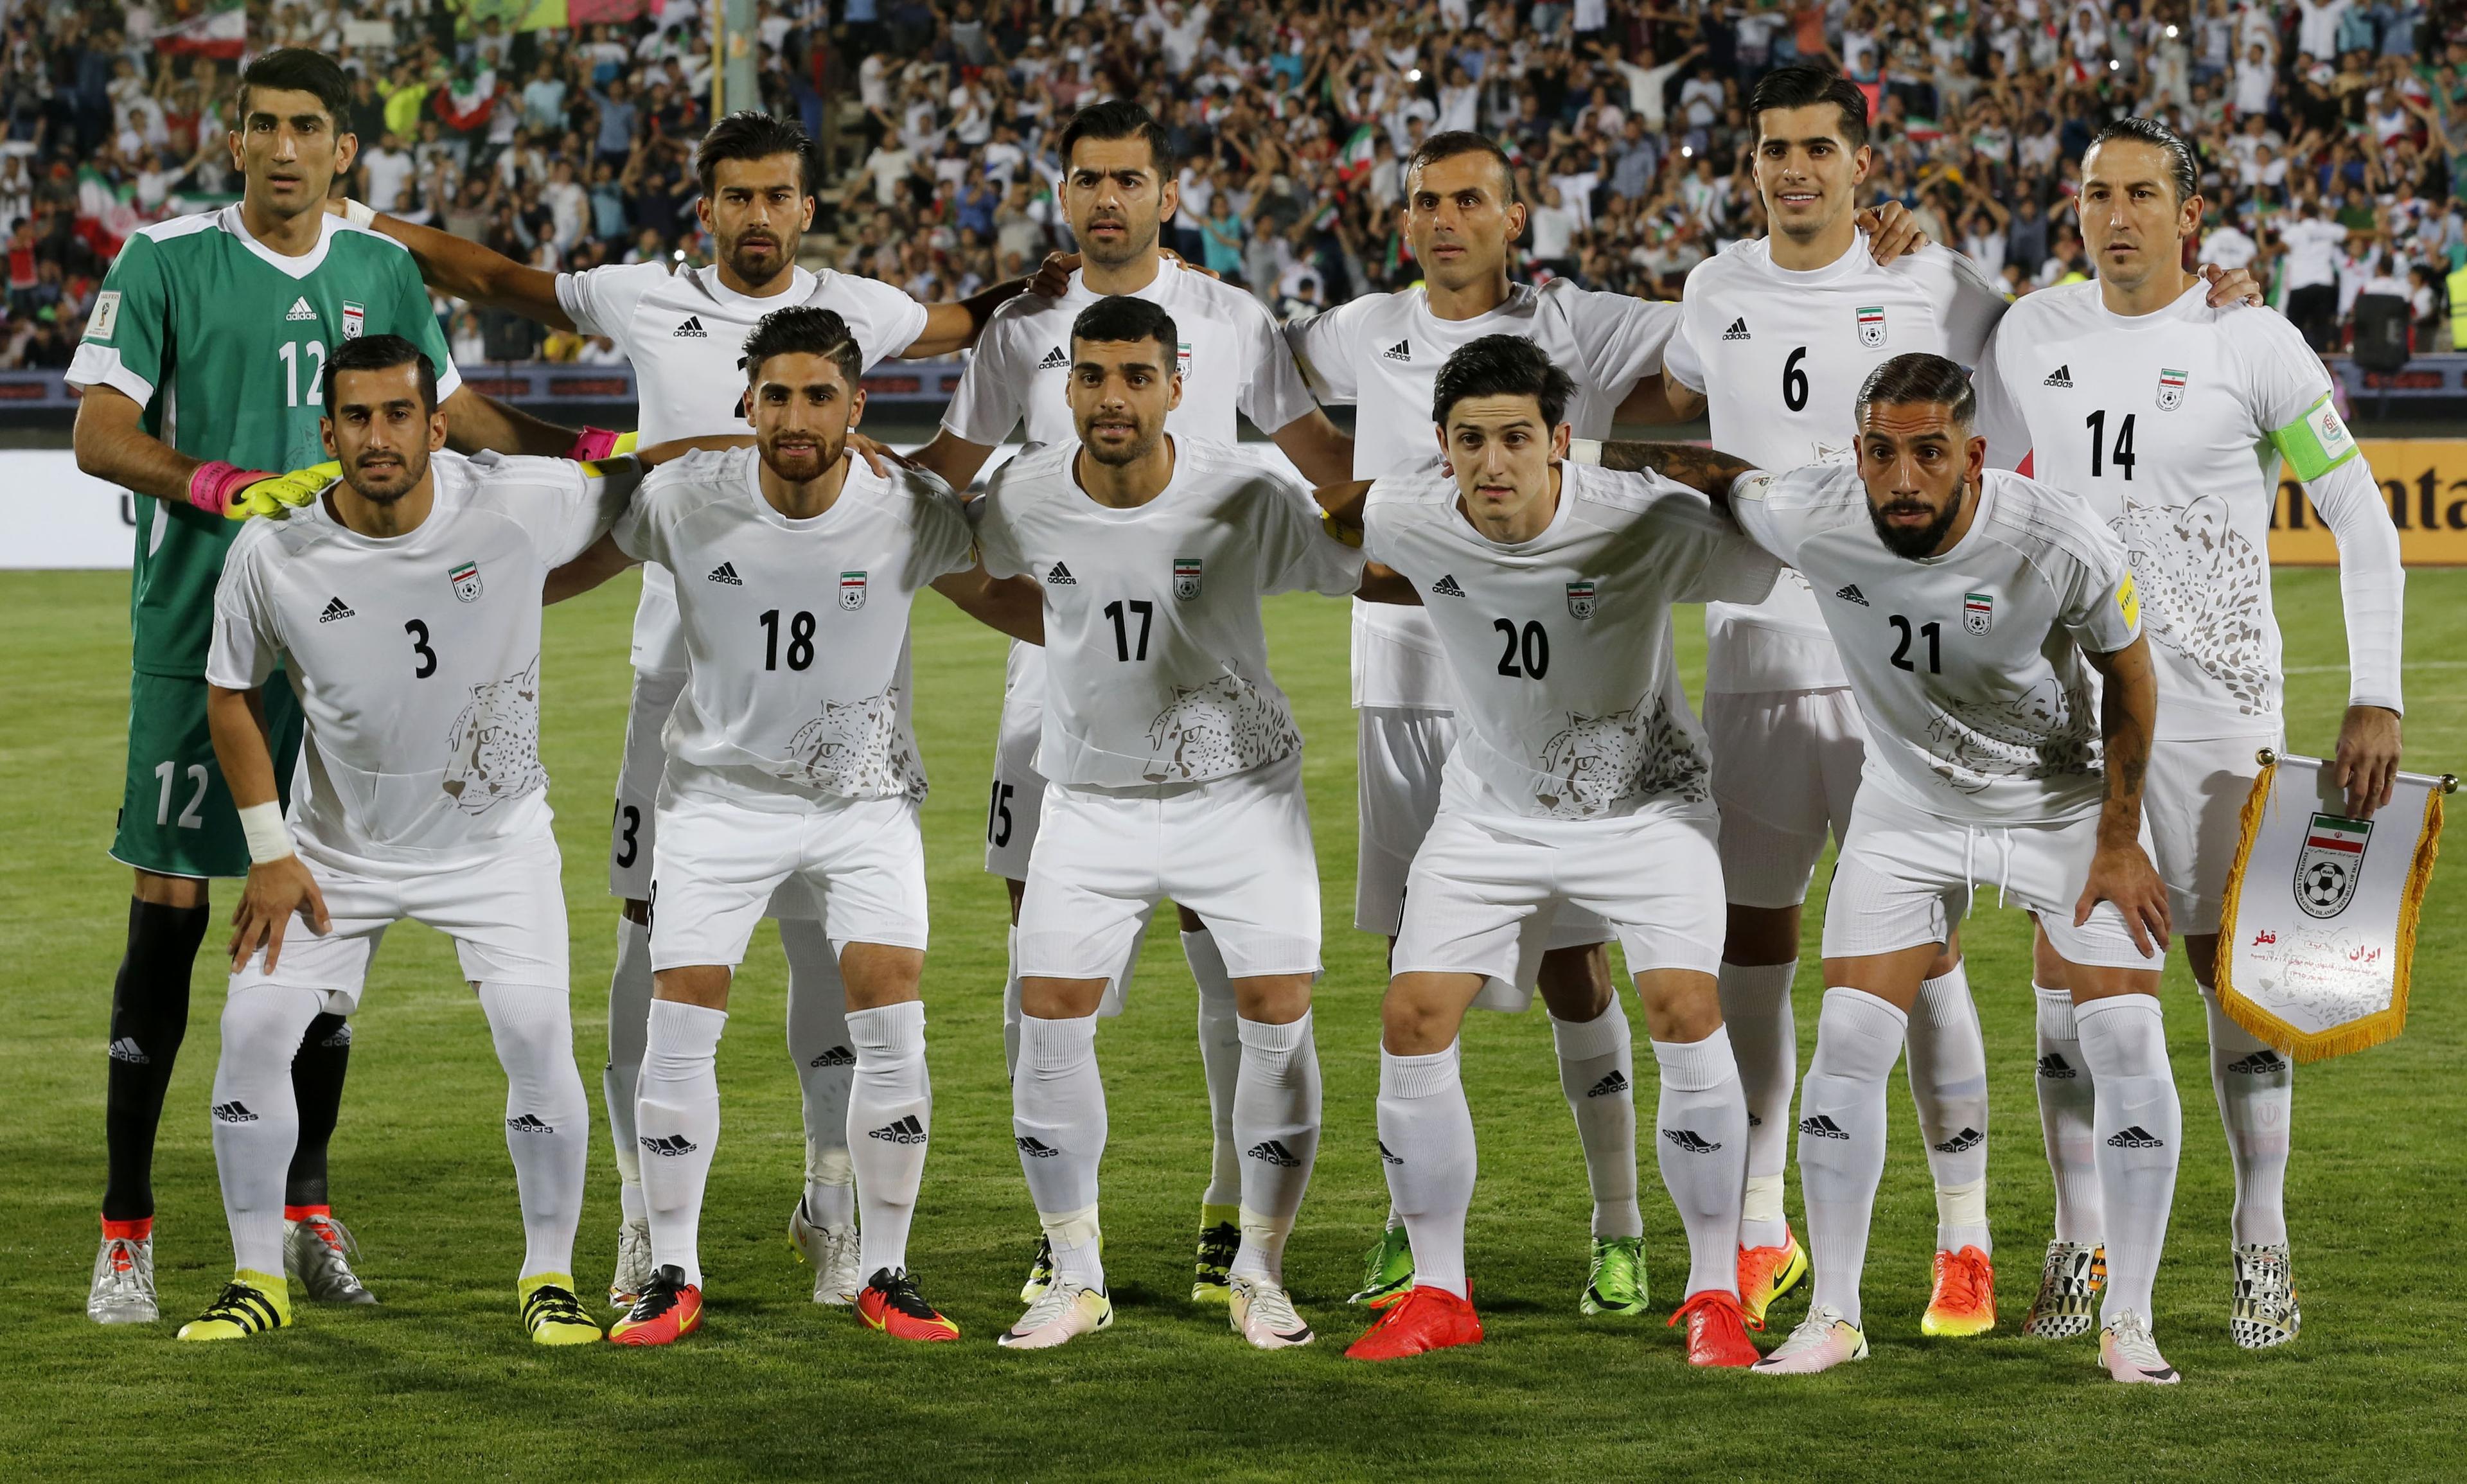 بازوبند کاپیتانی در بازی با قطر به چه کسی می رسد؟!